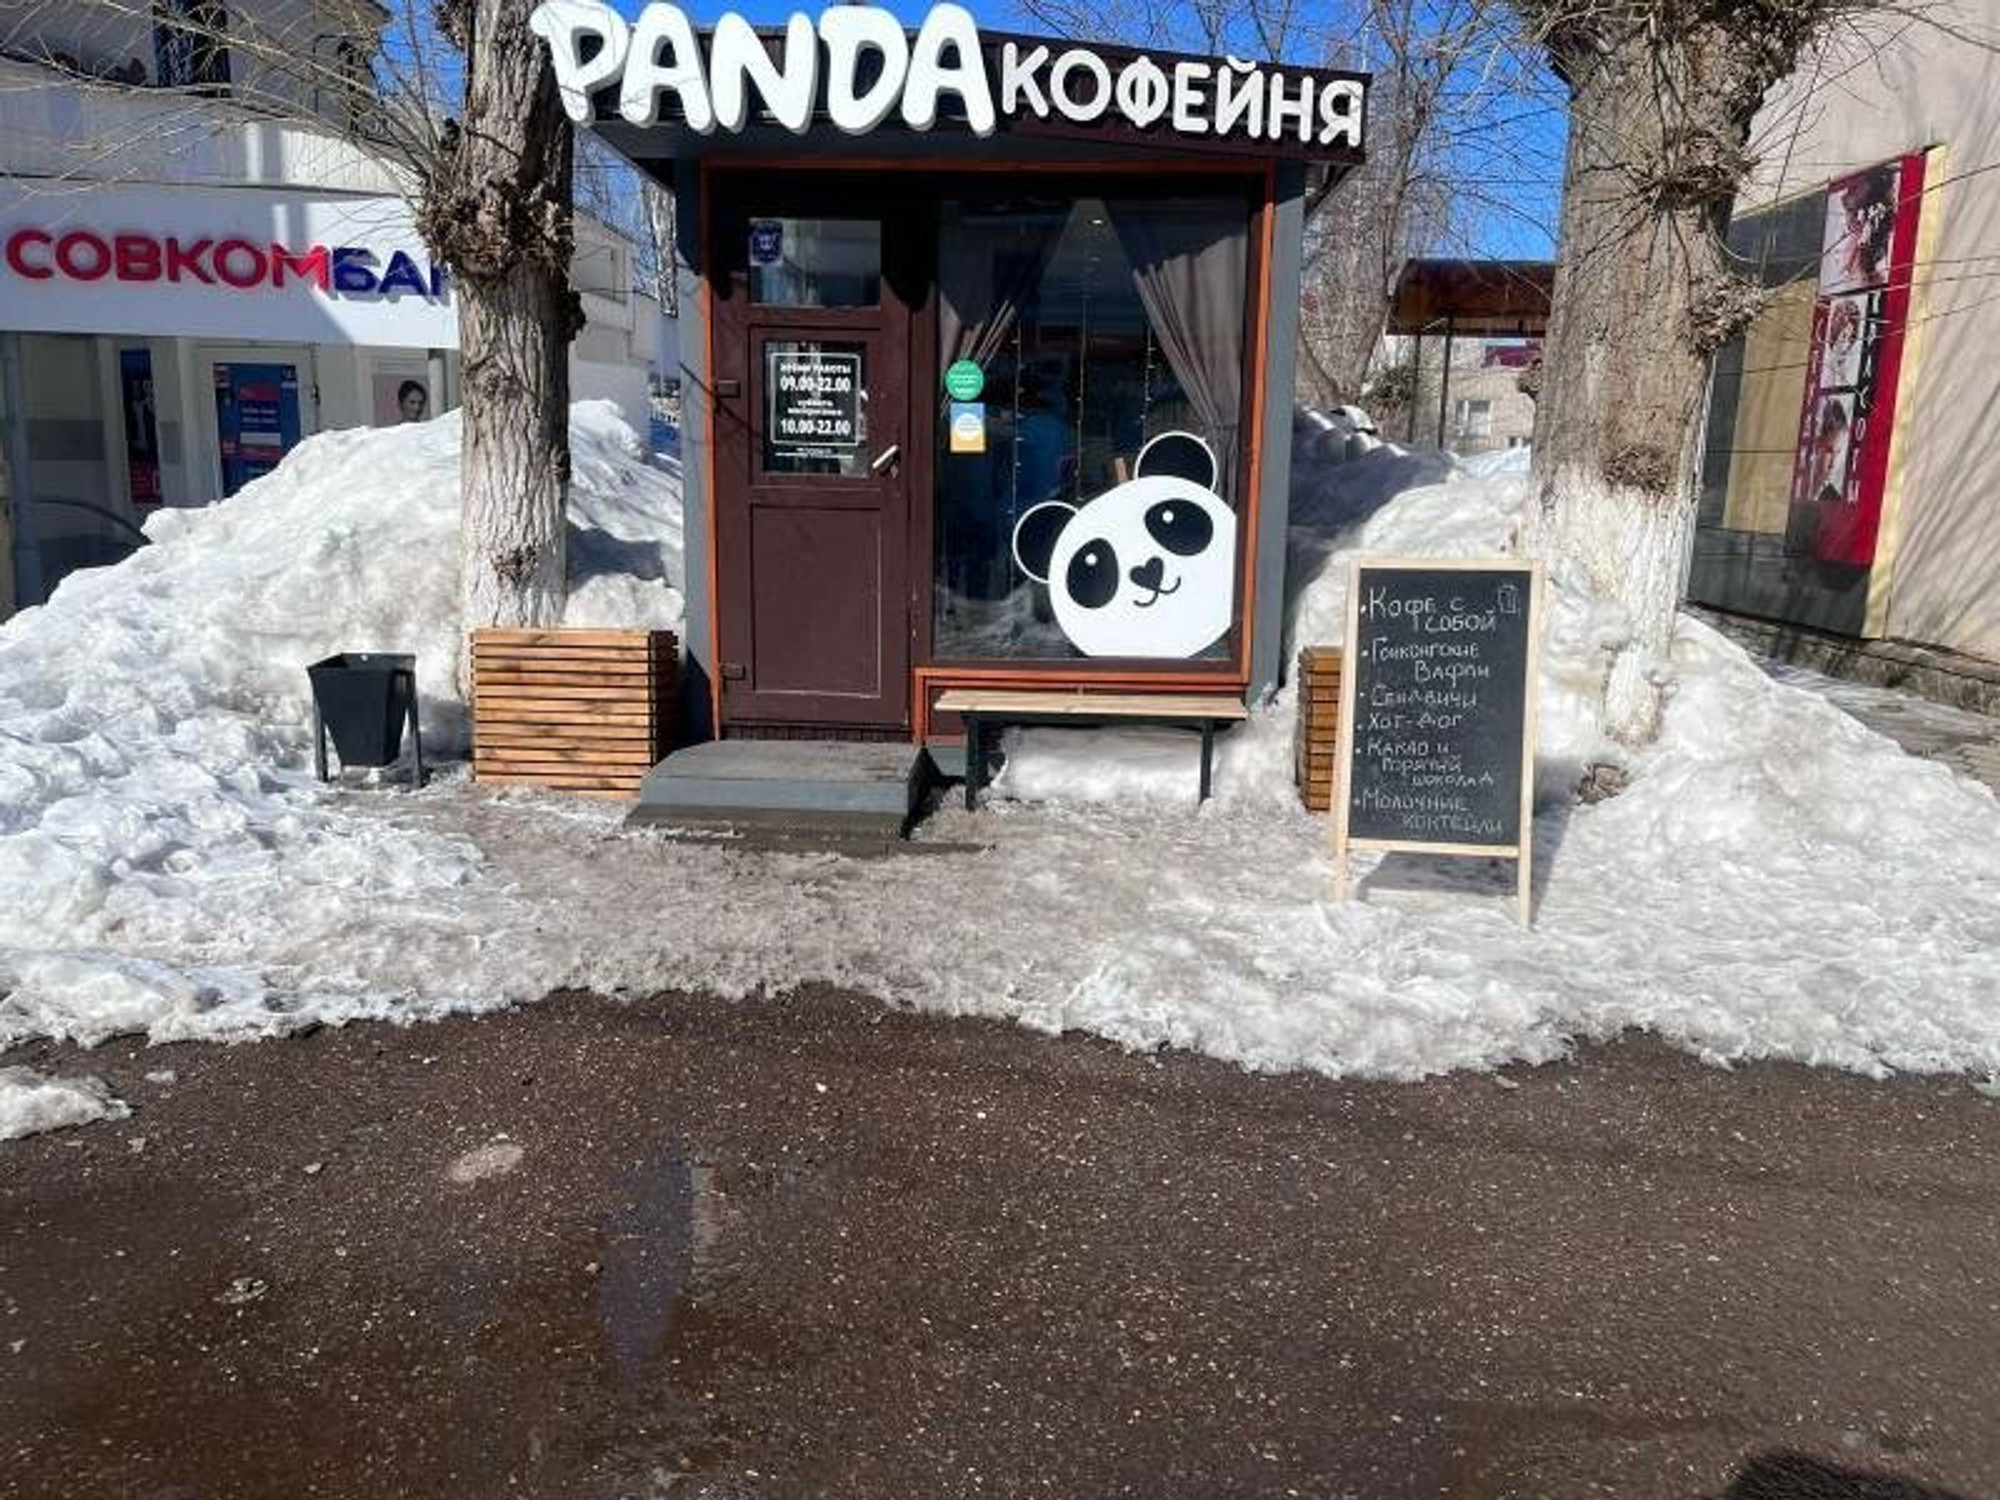 Панда (Кофейня)